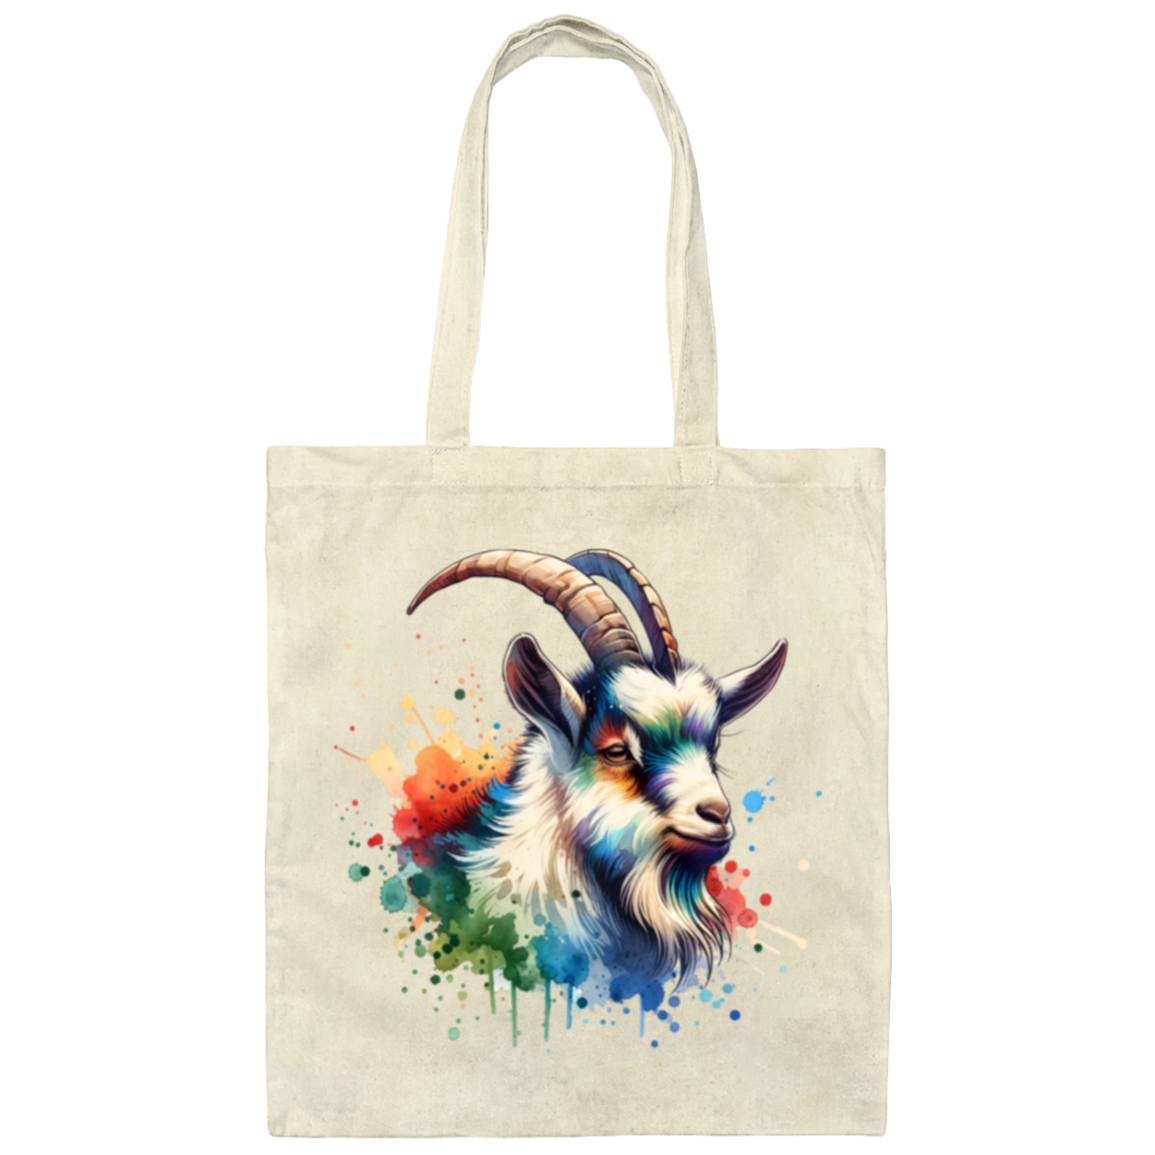 Goat Portrait Watercolor - Canvas Tote Bag